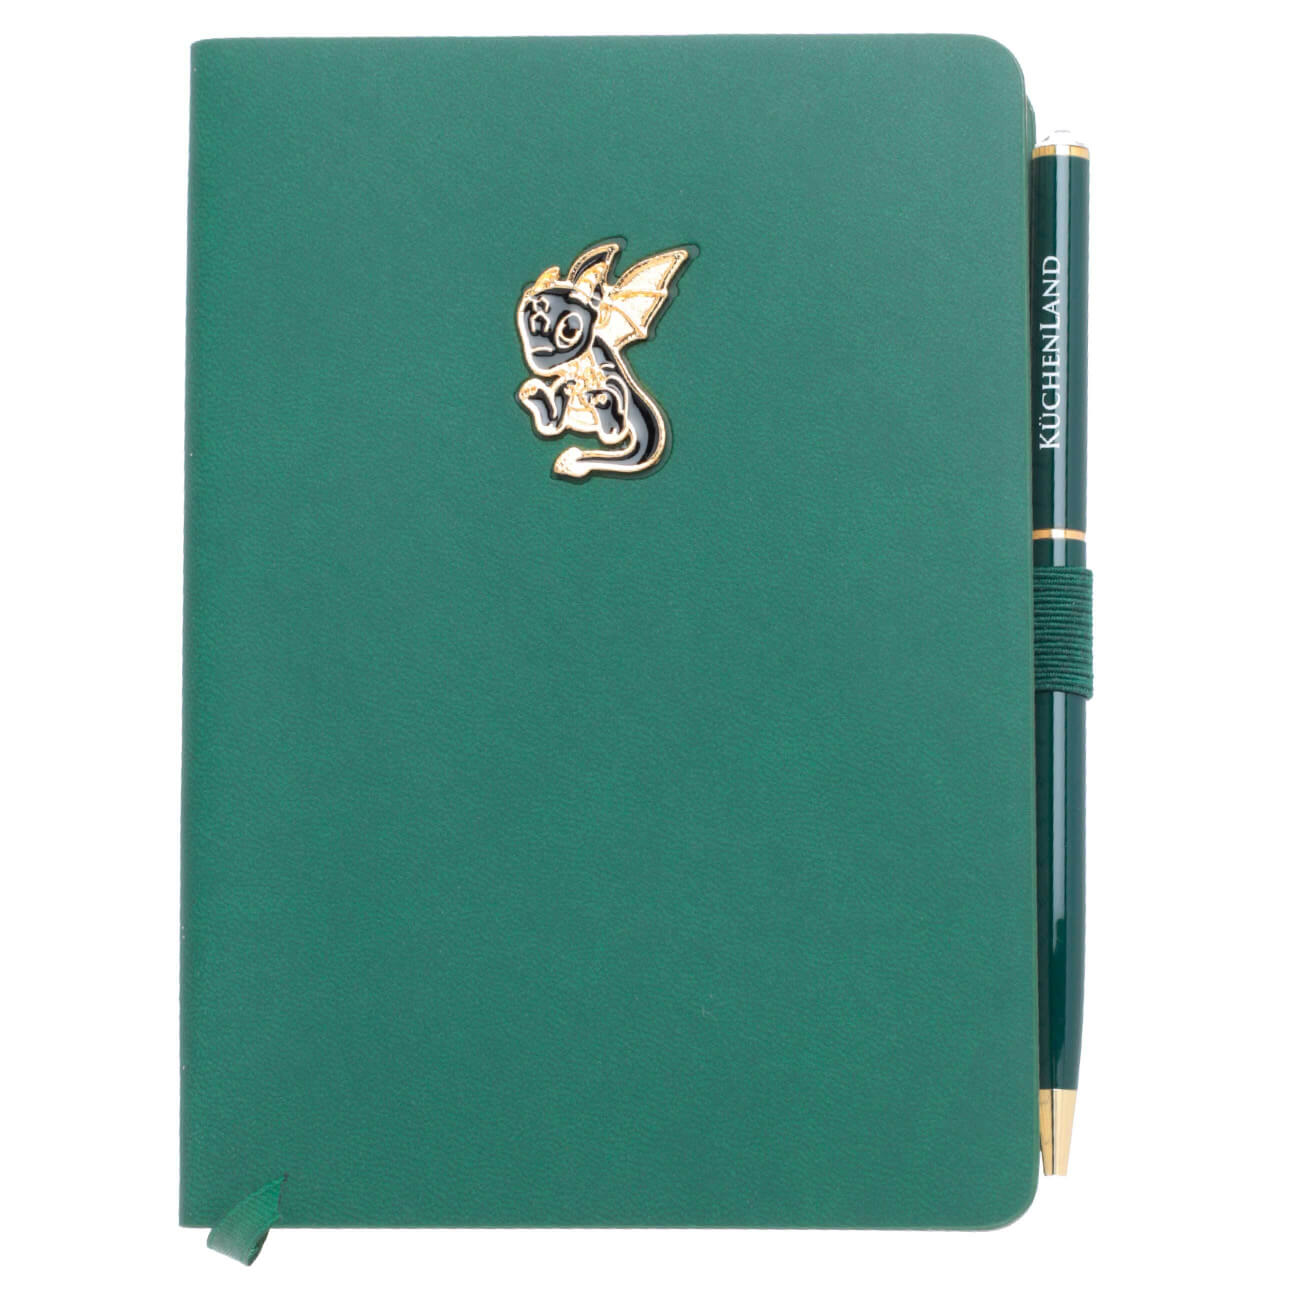 Блокнот для записей, 15х11 см, с ручкой, полиуретан, зеленый, Дракон с крыльями, Dragon spyro блокнот ооо комус